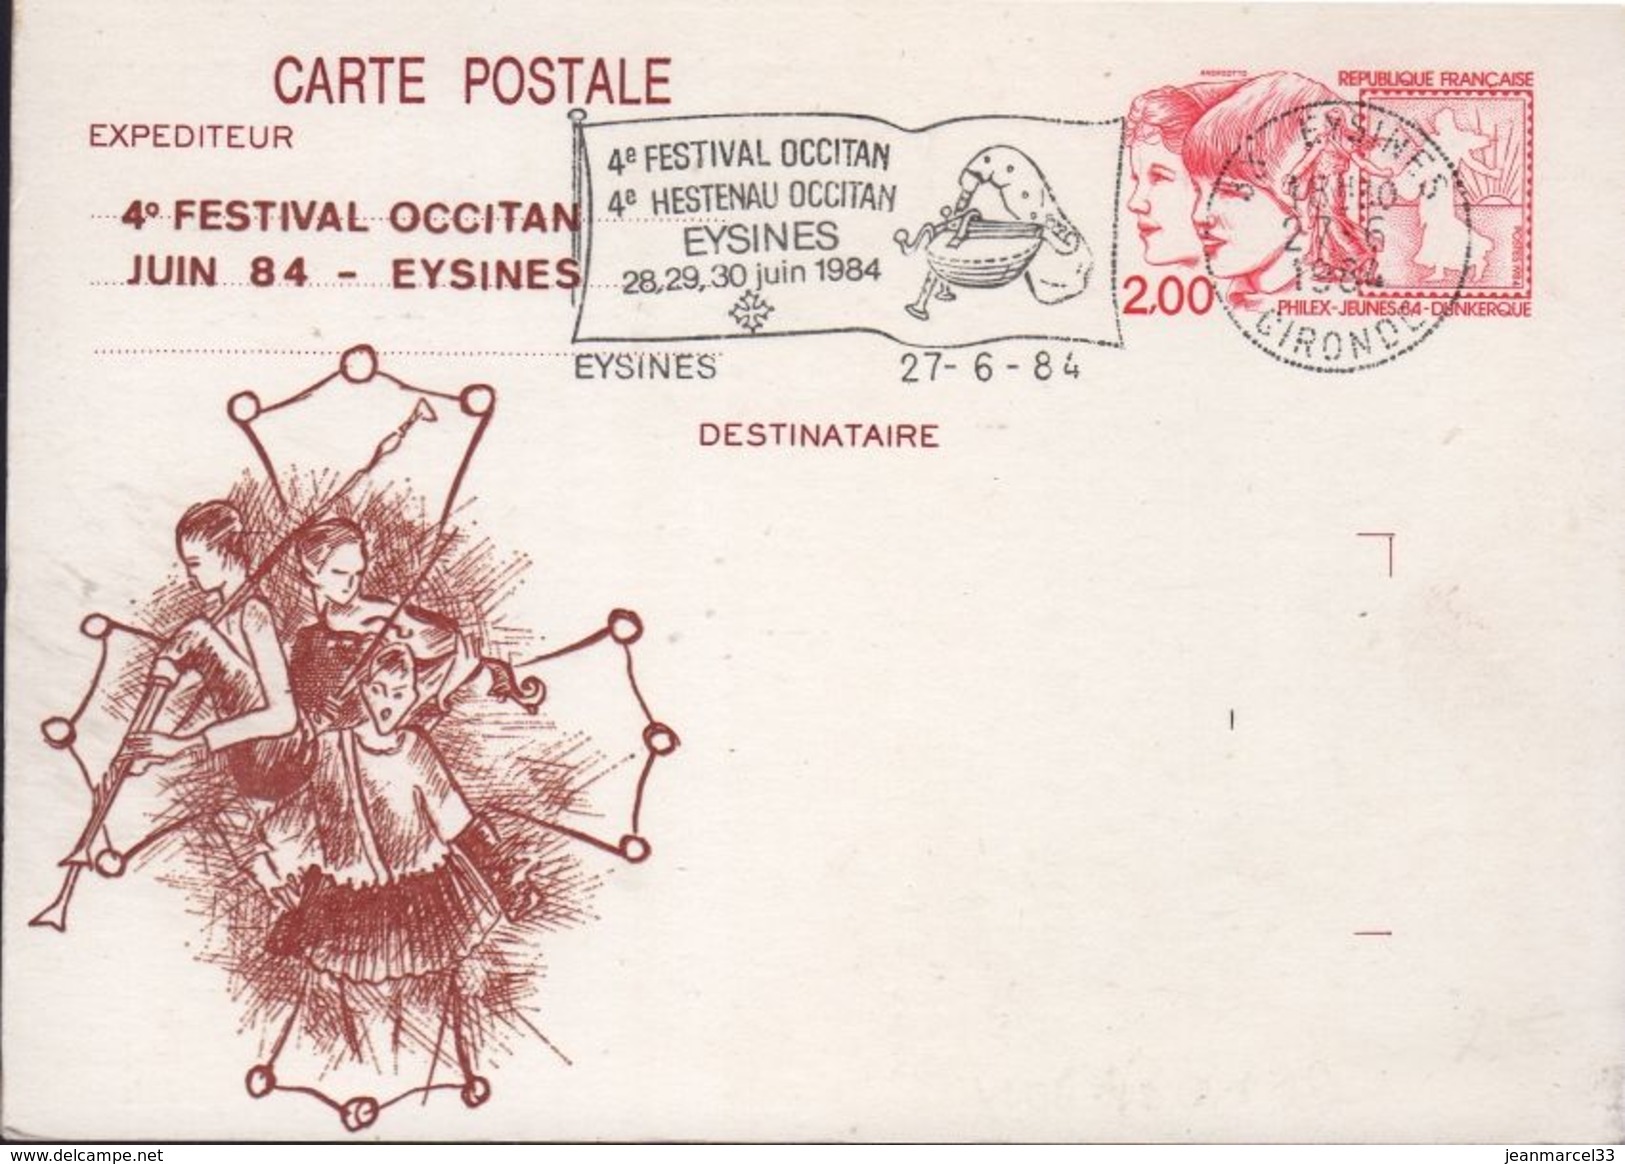 Carte Postale Entier 2,00 PhilexJeunes 84 Repiquée 4e Festival Occitan Oblitération Commémorative Flamme 33 Eysines 27-6 - Cartes Postales Repiquages (avant 1995)